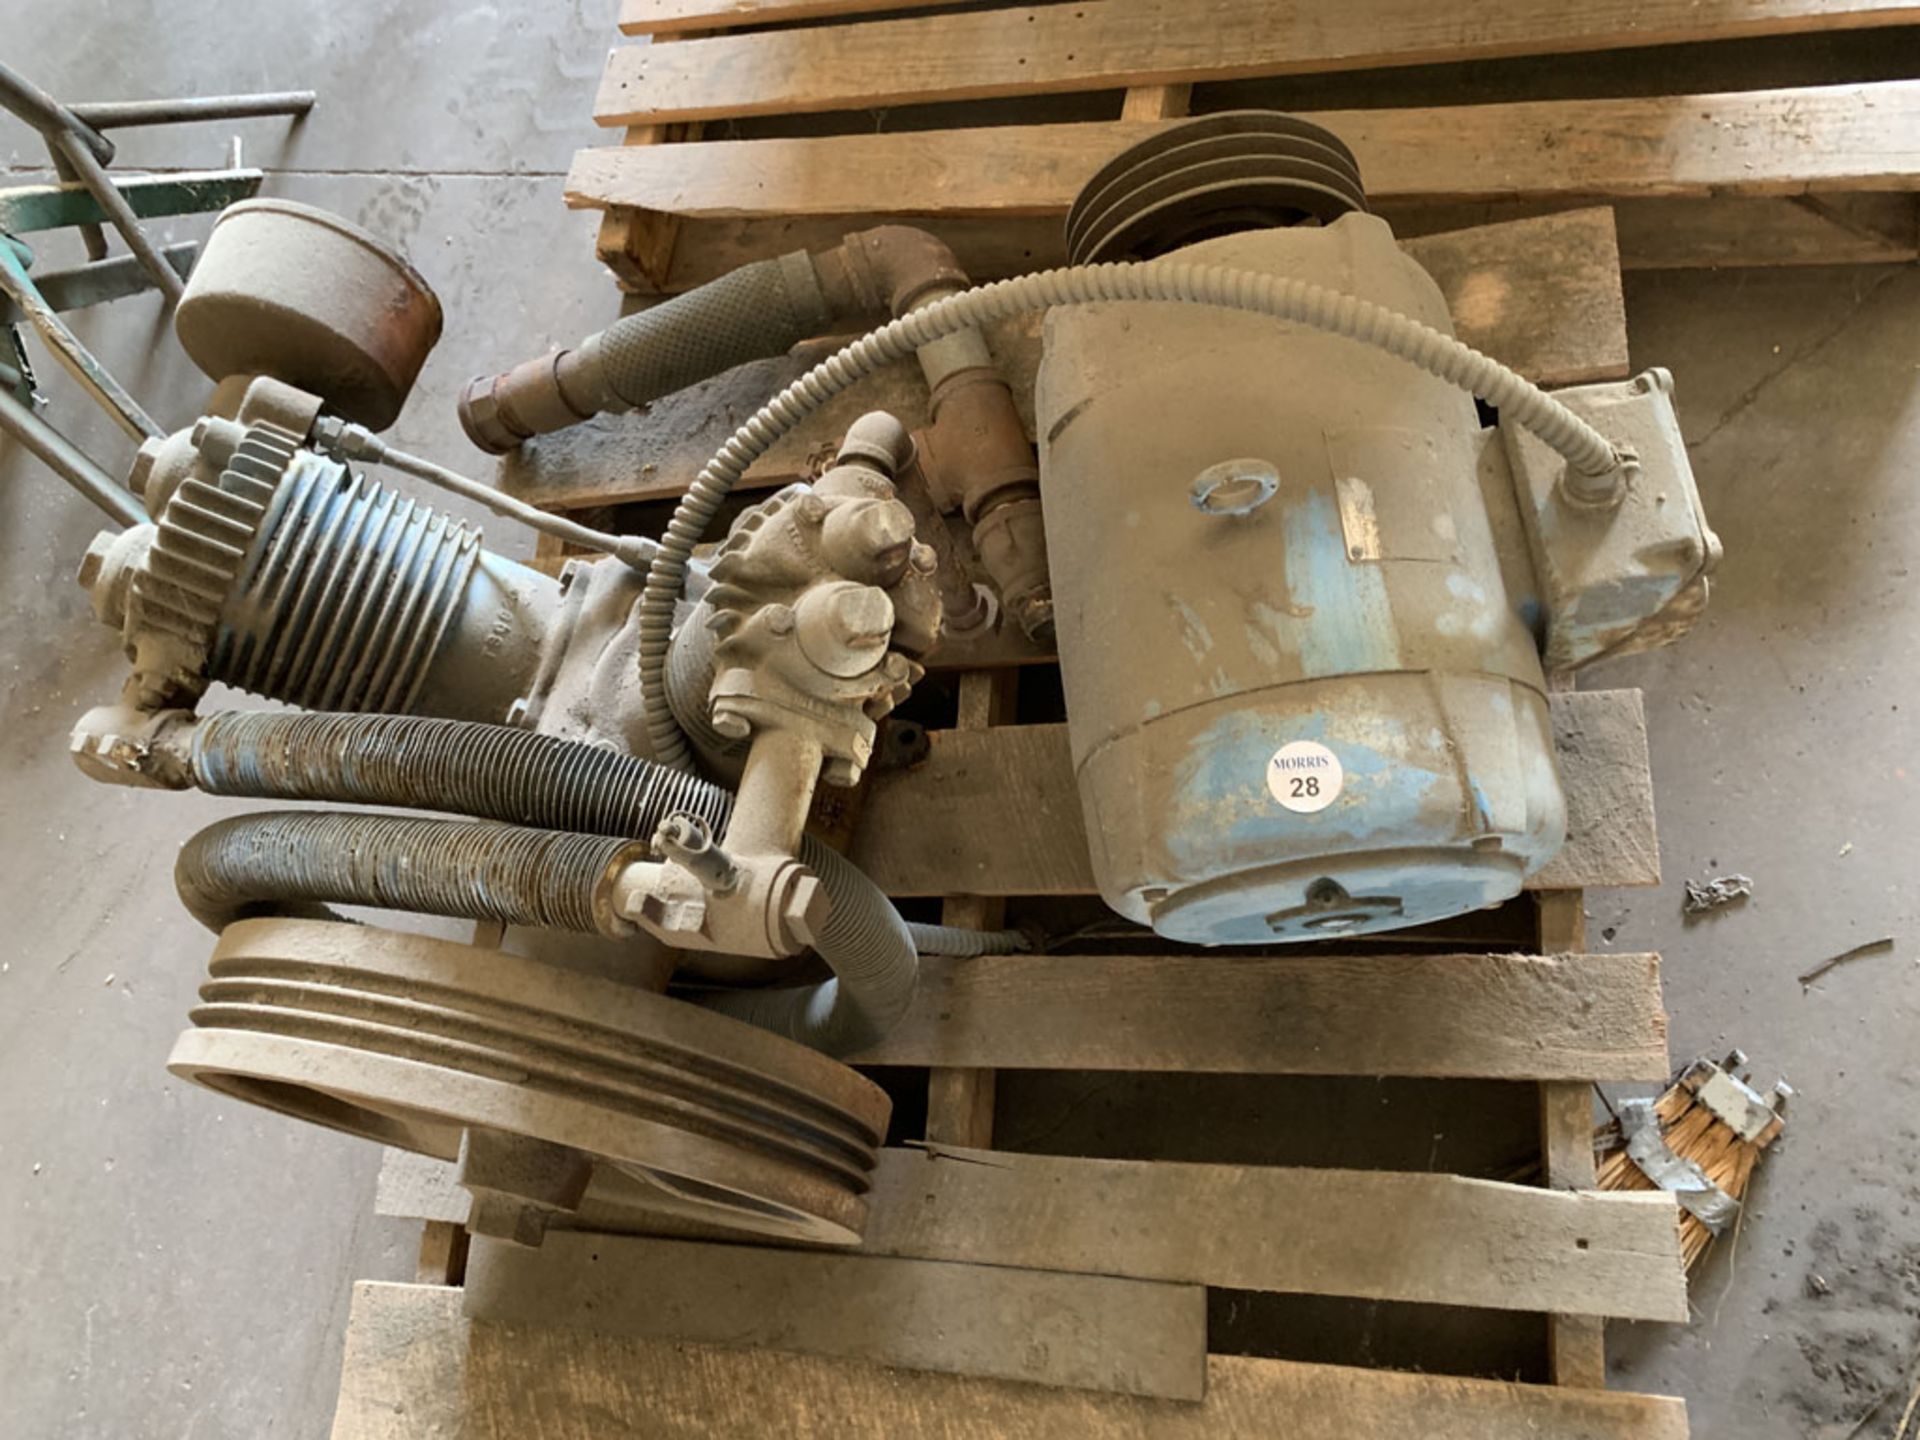 Compressor pump and motor